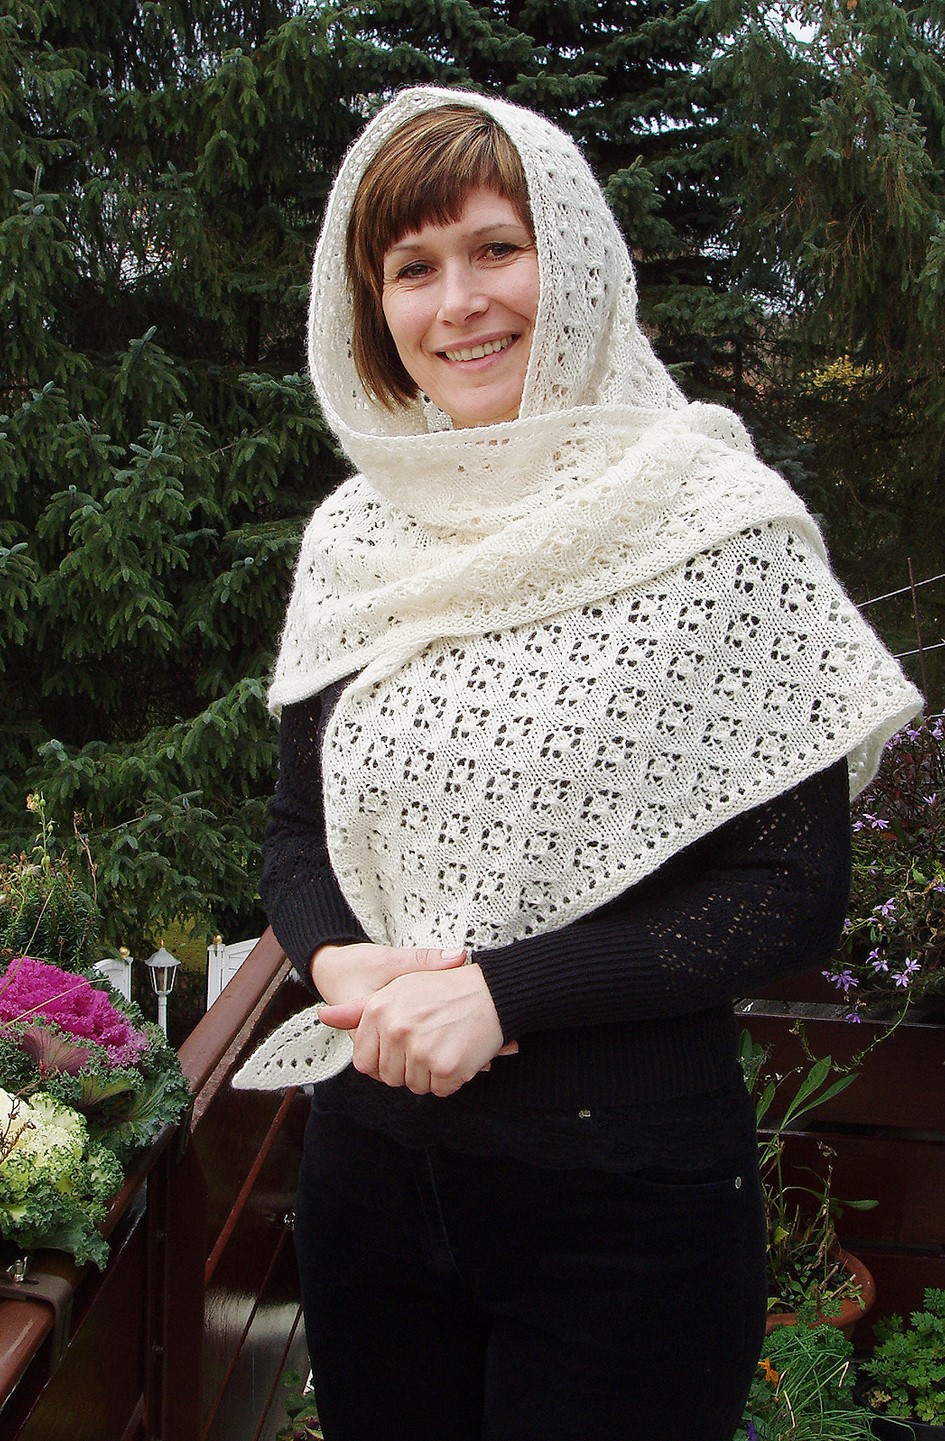 Flower shawl